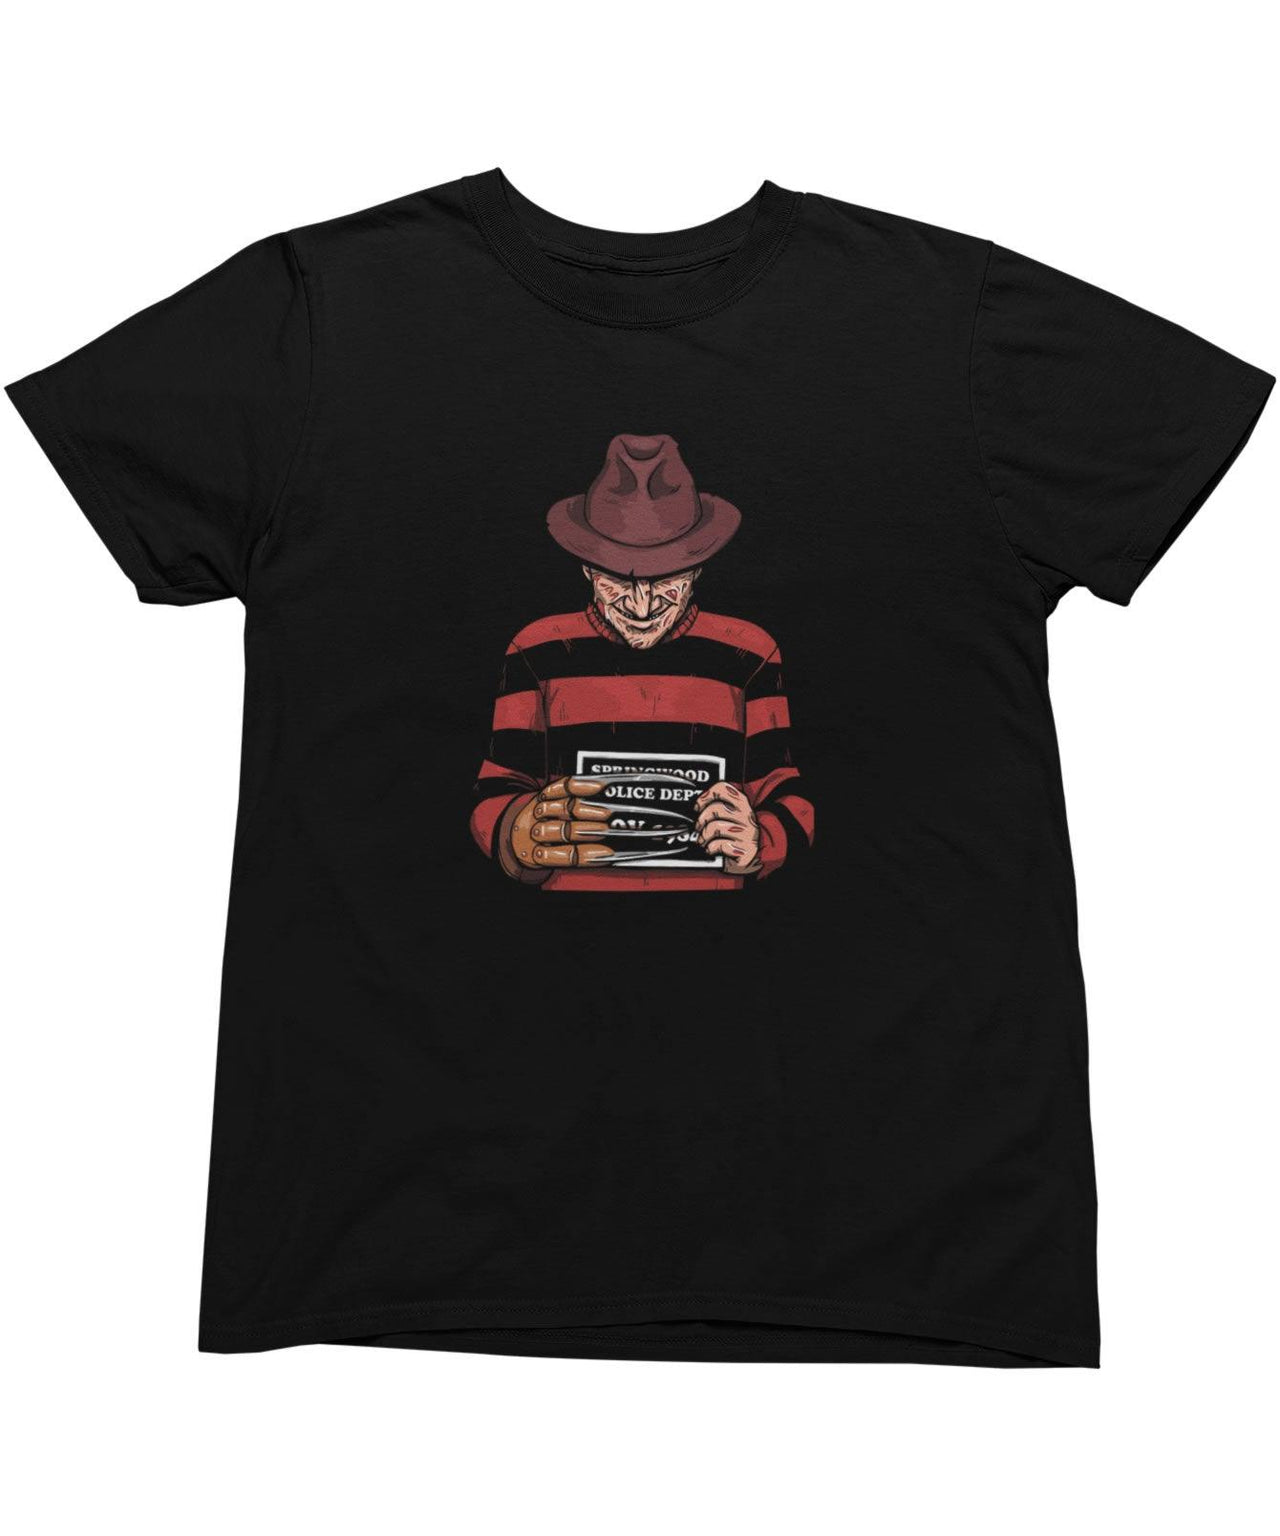 Freddy Krueger Mugshot Horror Film Tribute Mens Graphic T-Shirt 8Ball